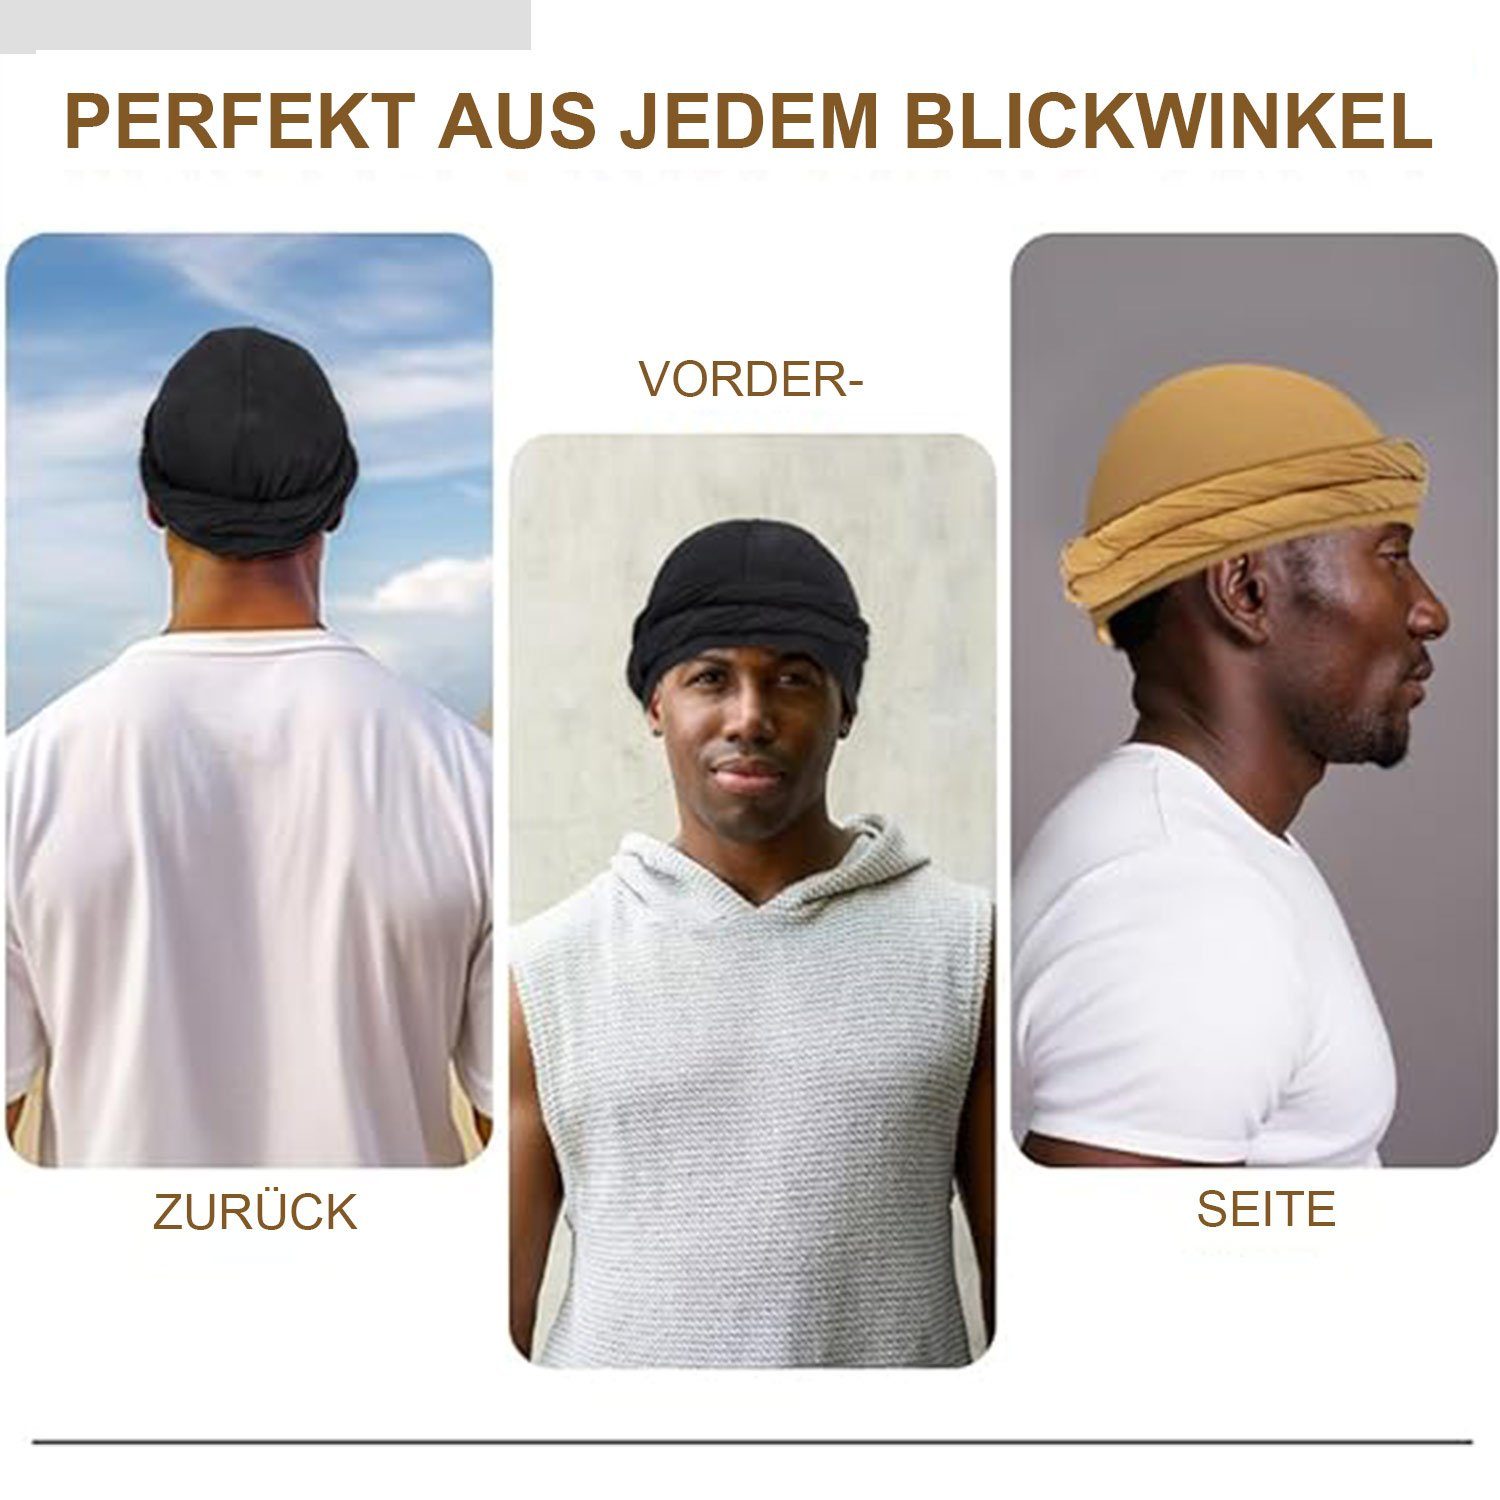 Turban Kopfbedeckung, Hut, MAGICSHE Schlapphut Ethnic Turbanmütze Herren Turban Schwarz